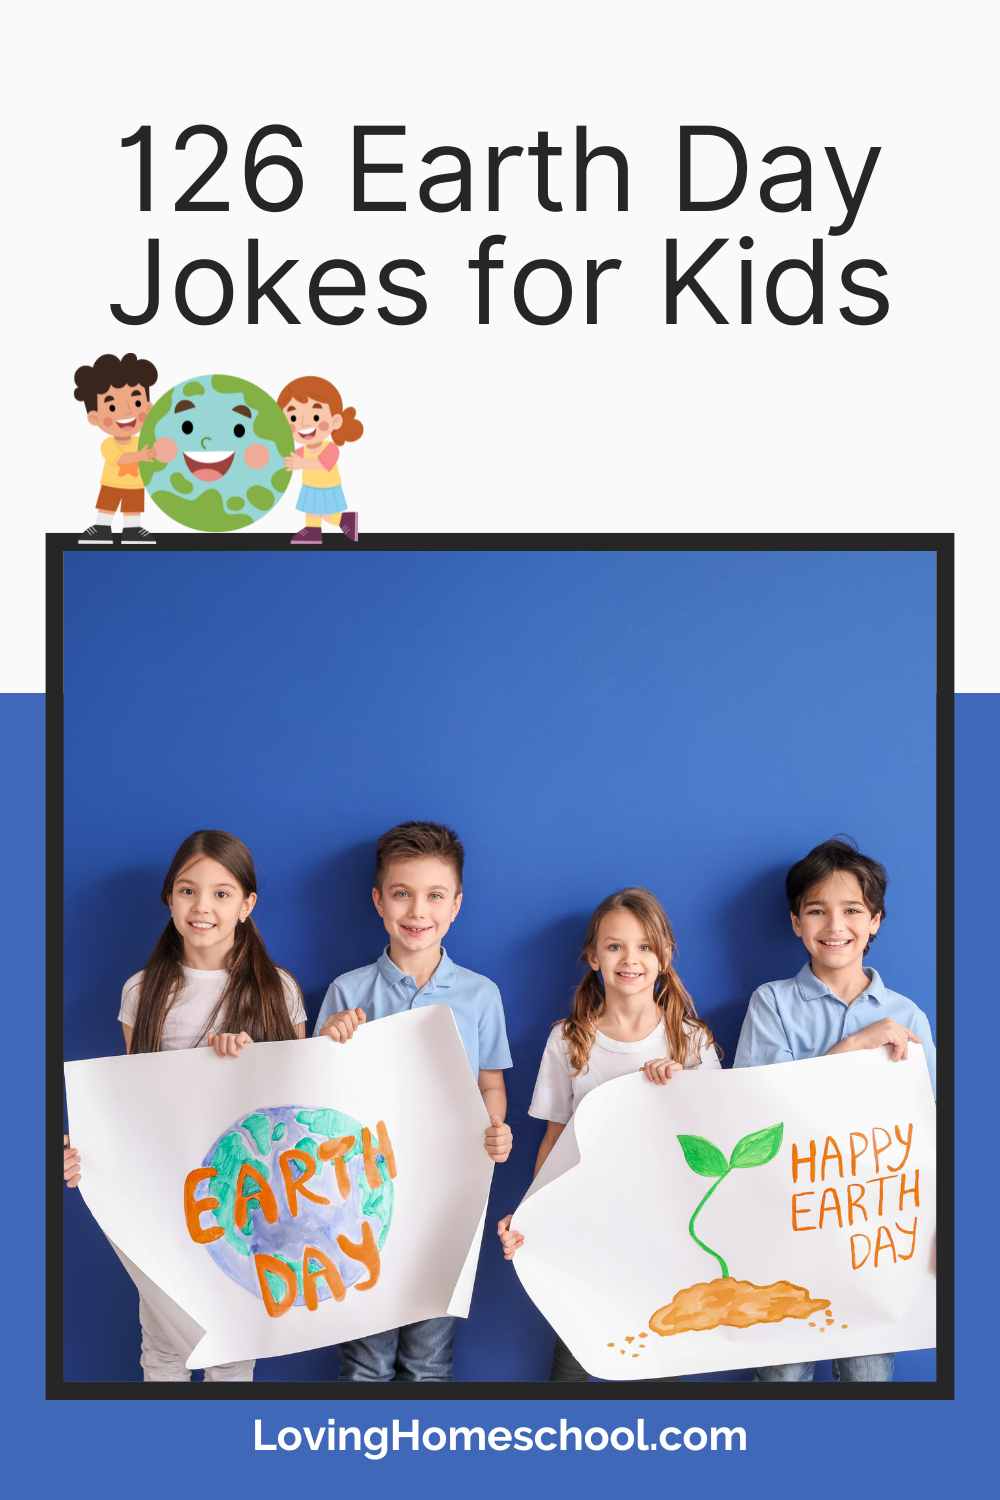 126 Earth Day Jokes for Kids Pinterest Pin